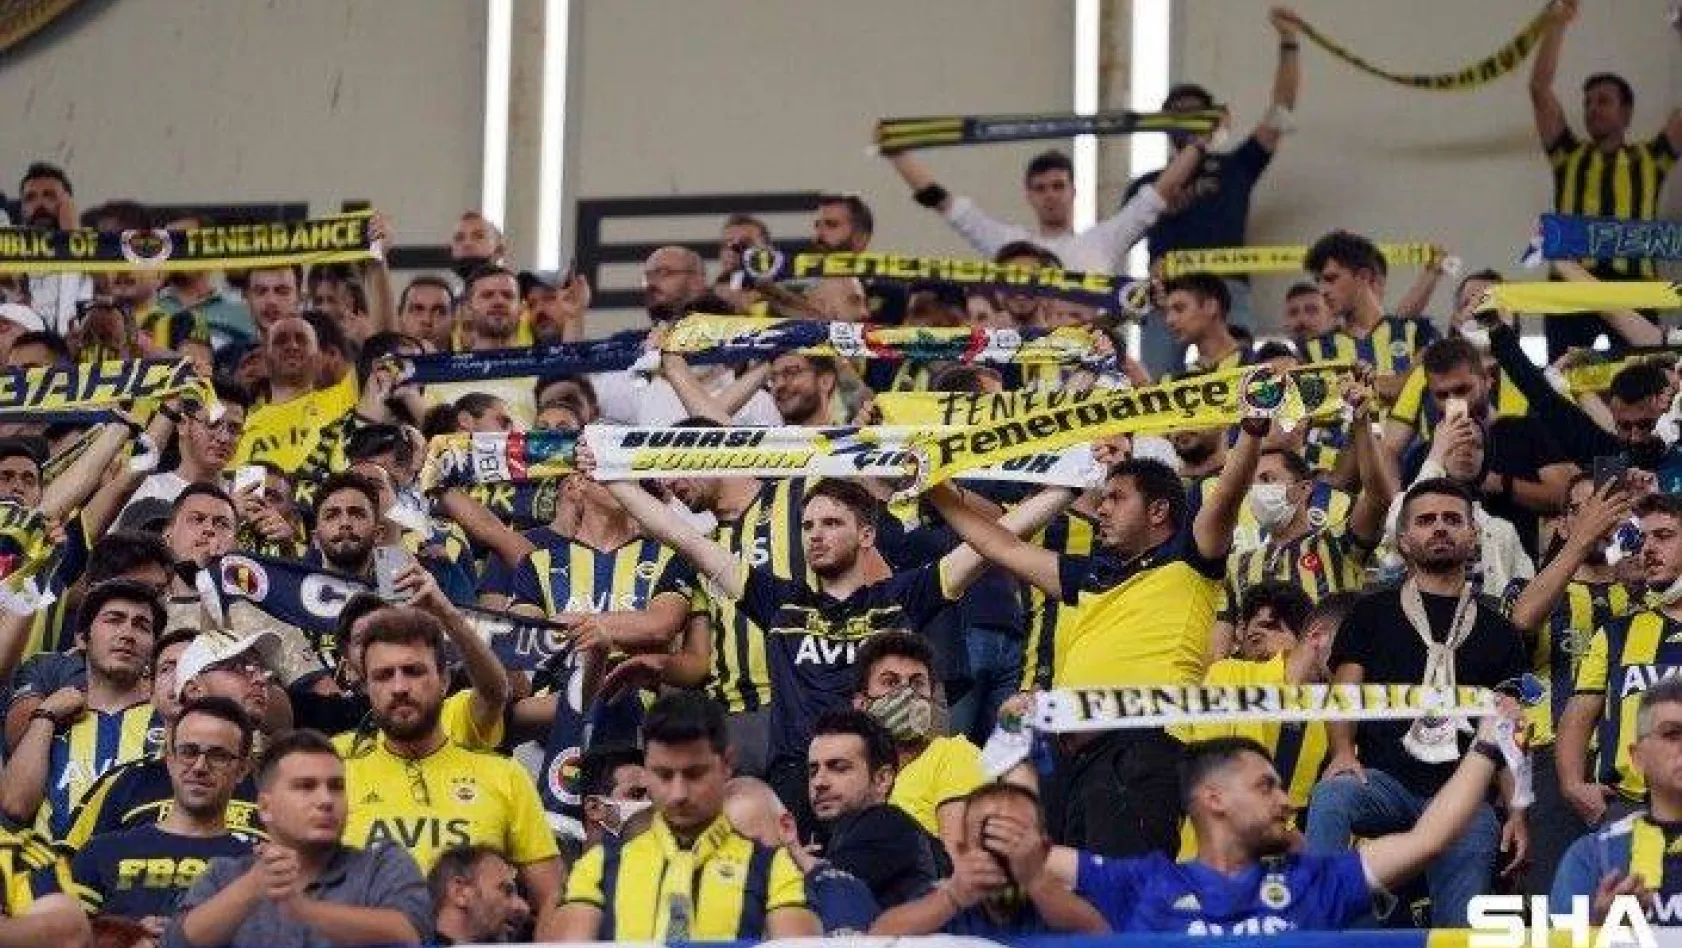 Süper Lig: Fenerbahçe: 0 - Sivasspor: 0 (Maç devam ediyor)